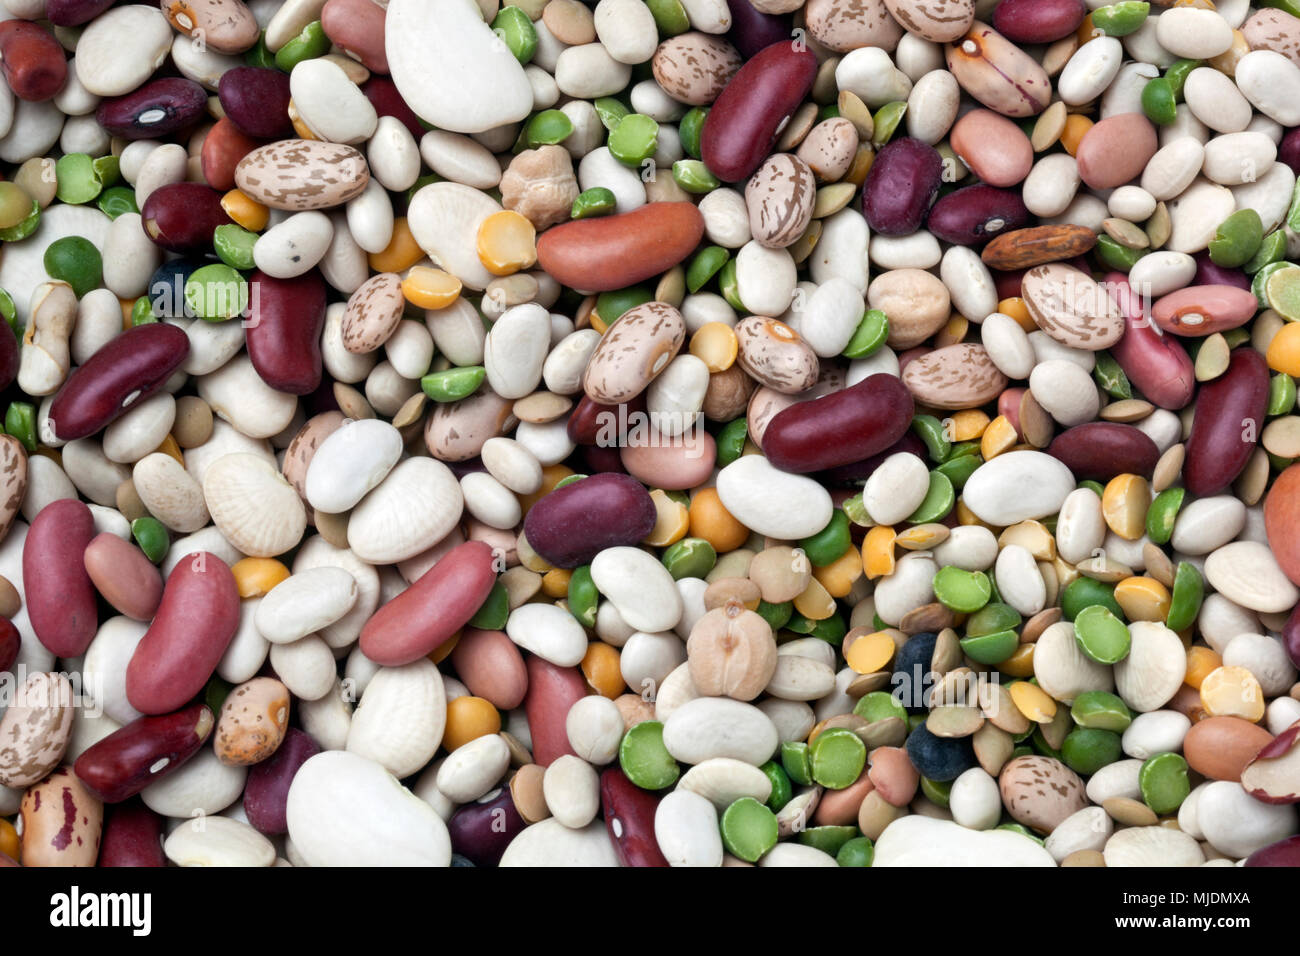 Immer noch leben der sortierten trockene Bohnen: Nord, Pinto, grüne Erbsen, Niere, Cranberry Bean, Kleine Weiße, kleine rote, gelbe Erbsen, Linsen, Marine, Wh Stockfoto